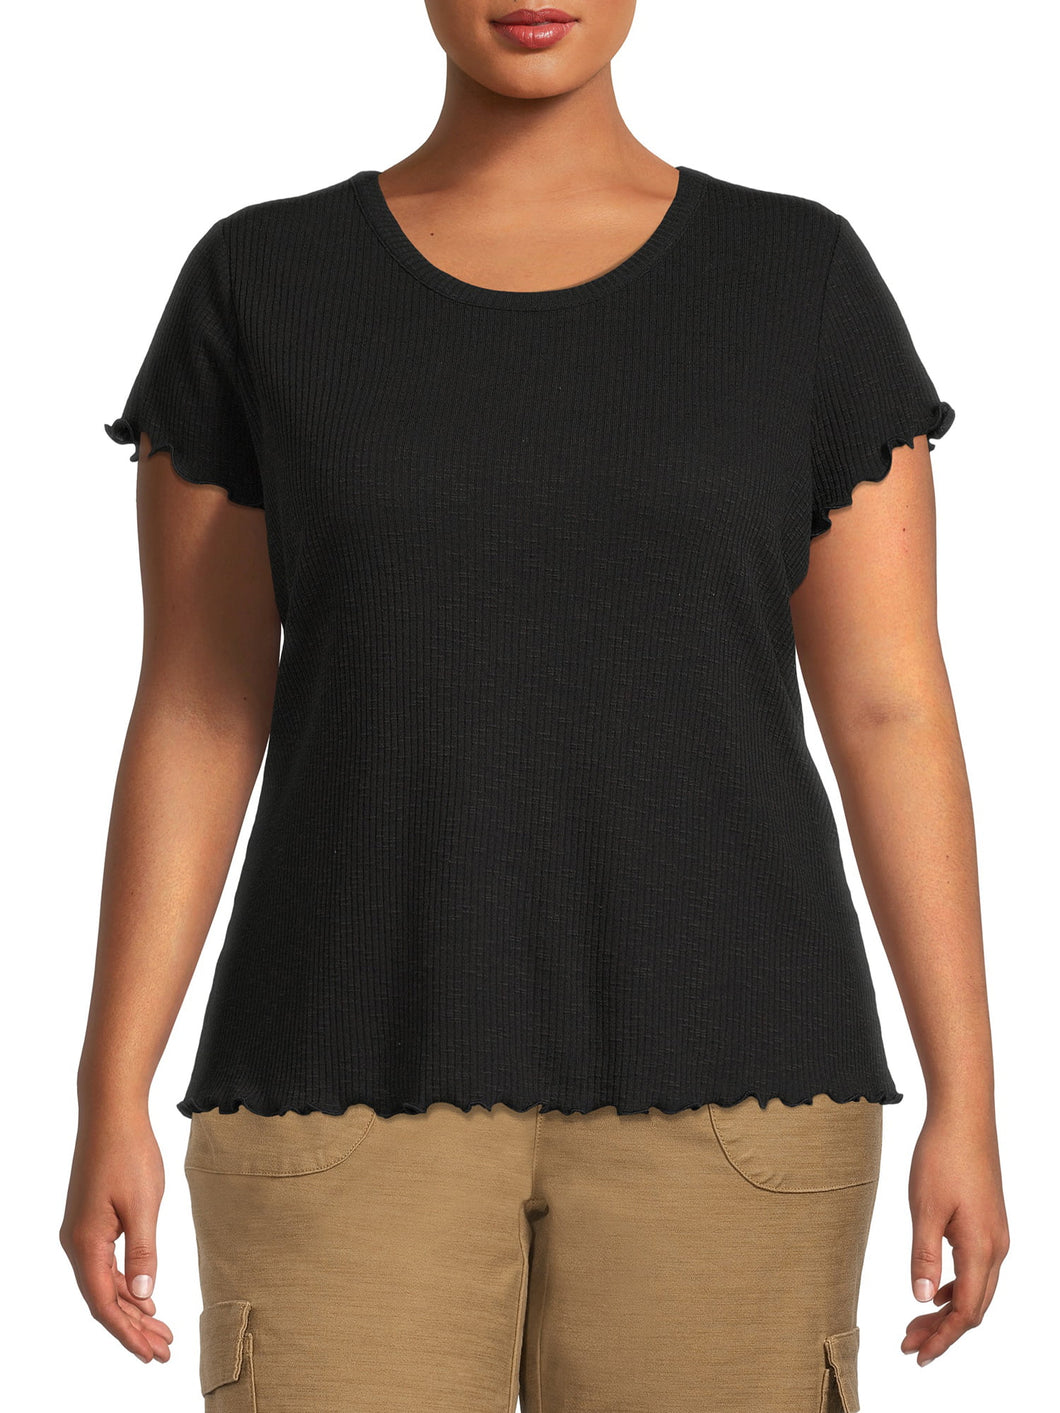 Terra & Sky Women's Plus Size Lettuce Edge Short Sleeve T-Shirt New